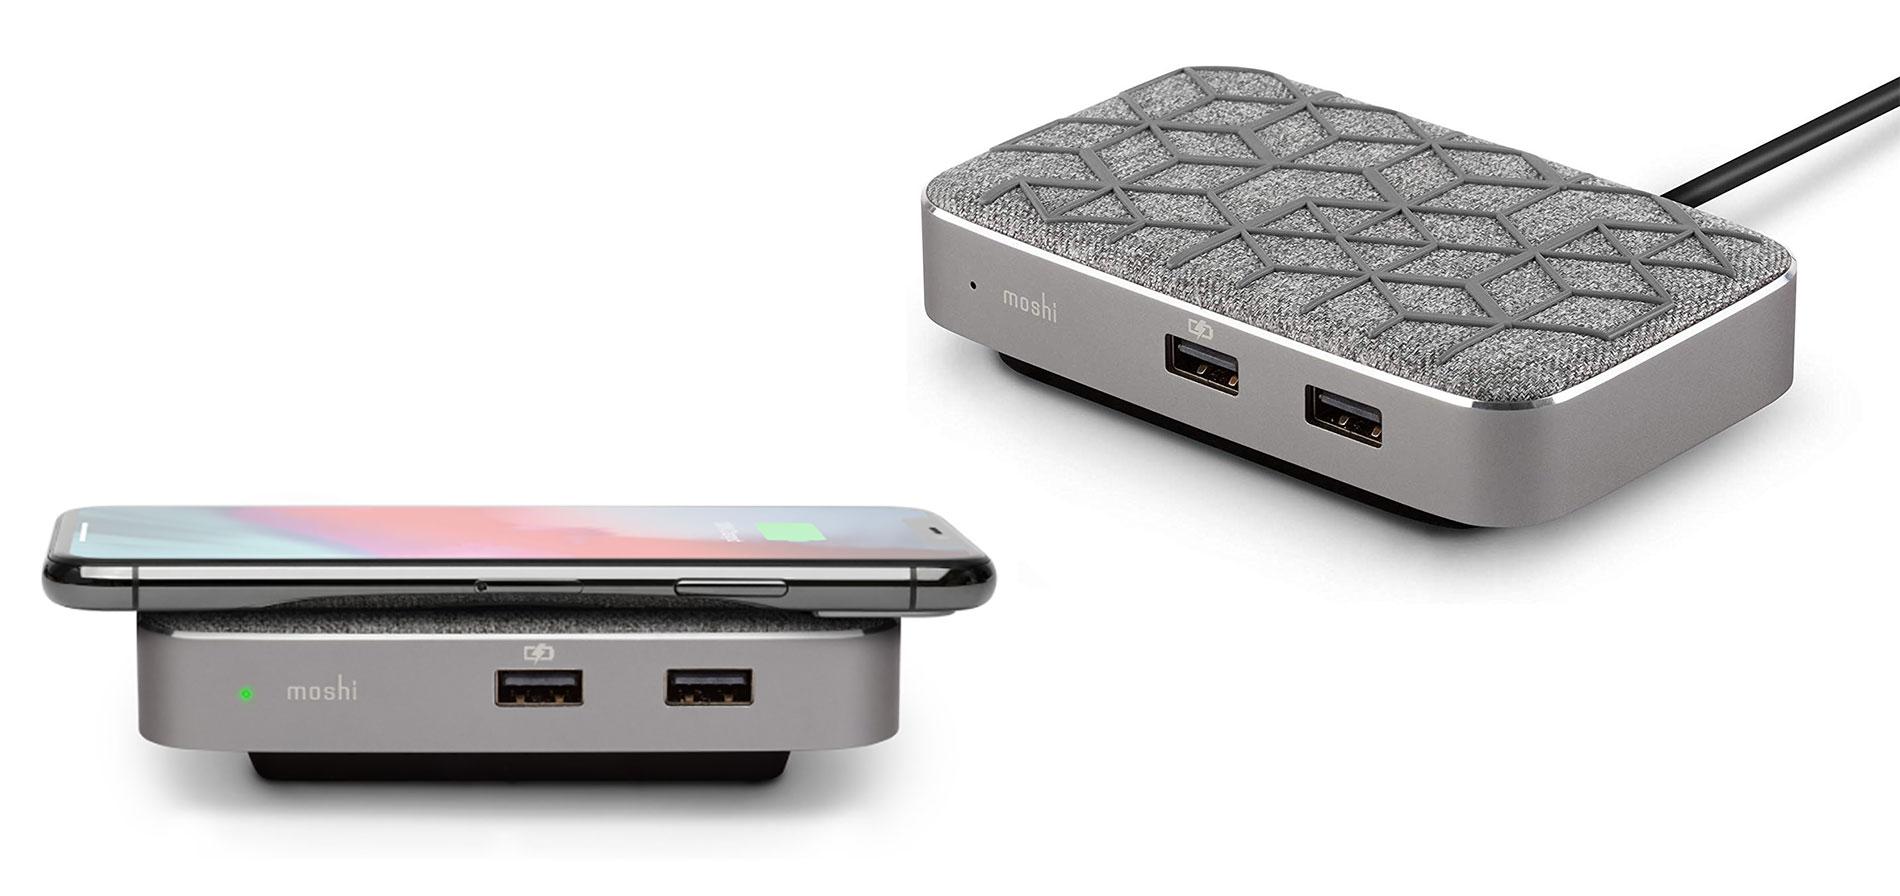 Moshi Symbus Q - Beste USB-C dock voor draadloos opladen van telefoon